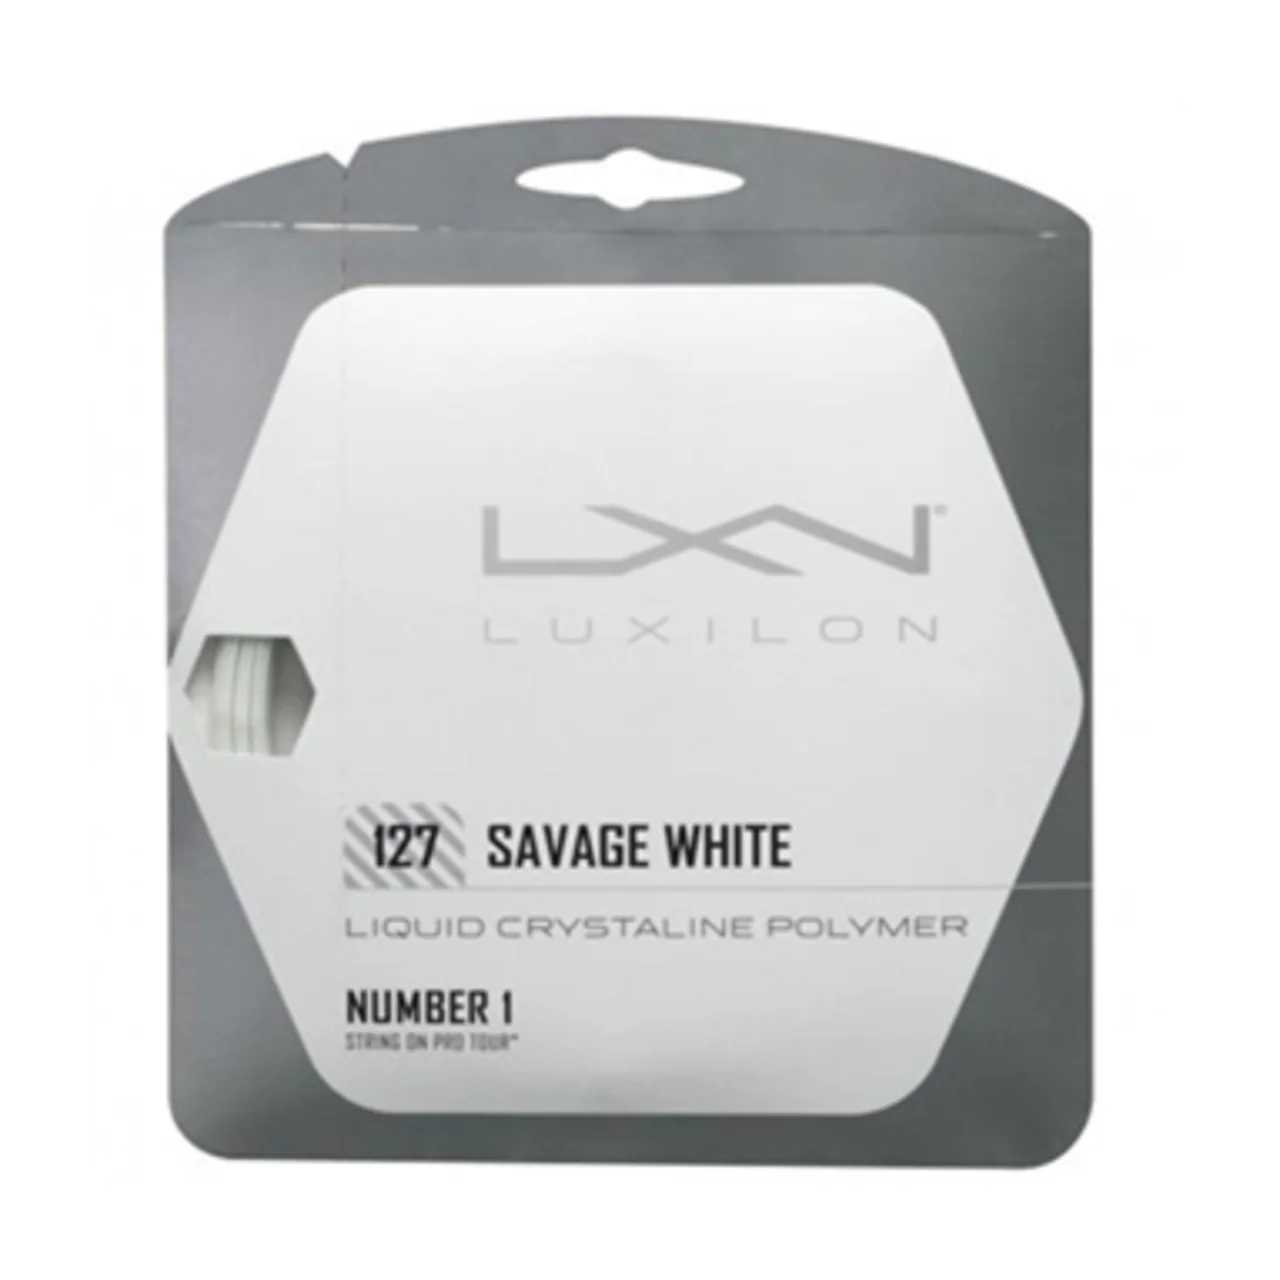 Luxilon Savage White Set